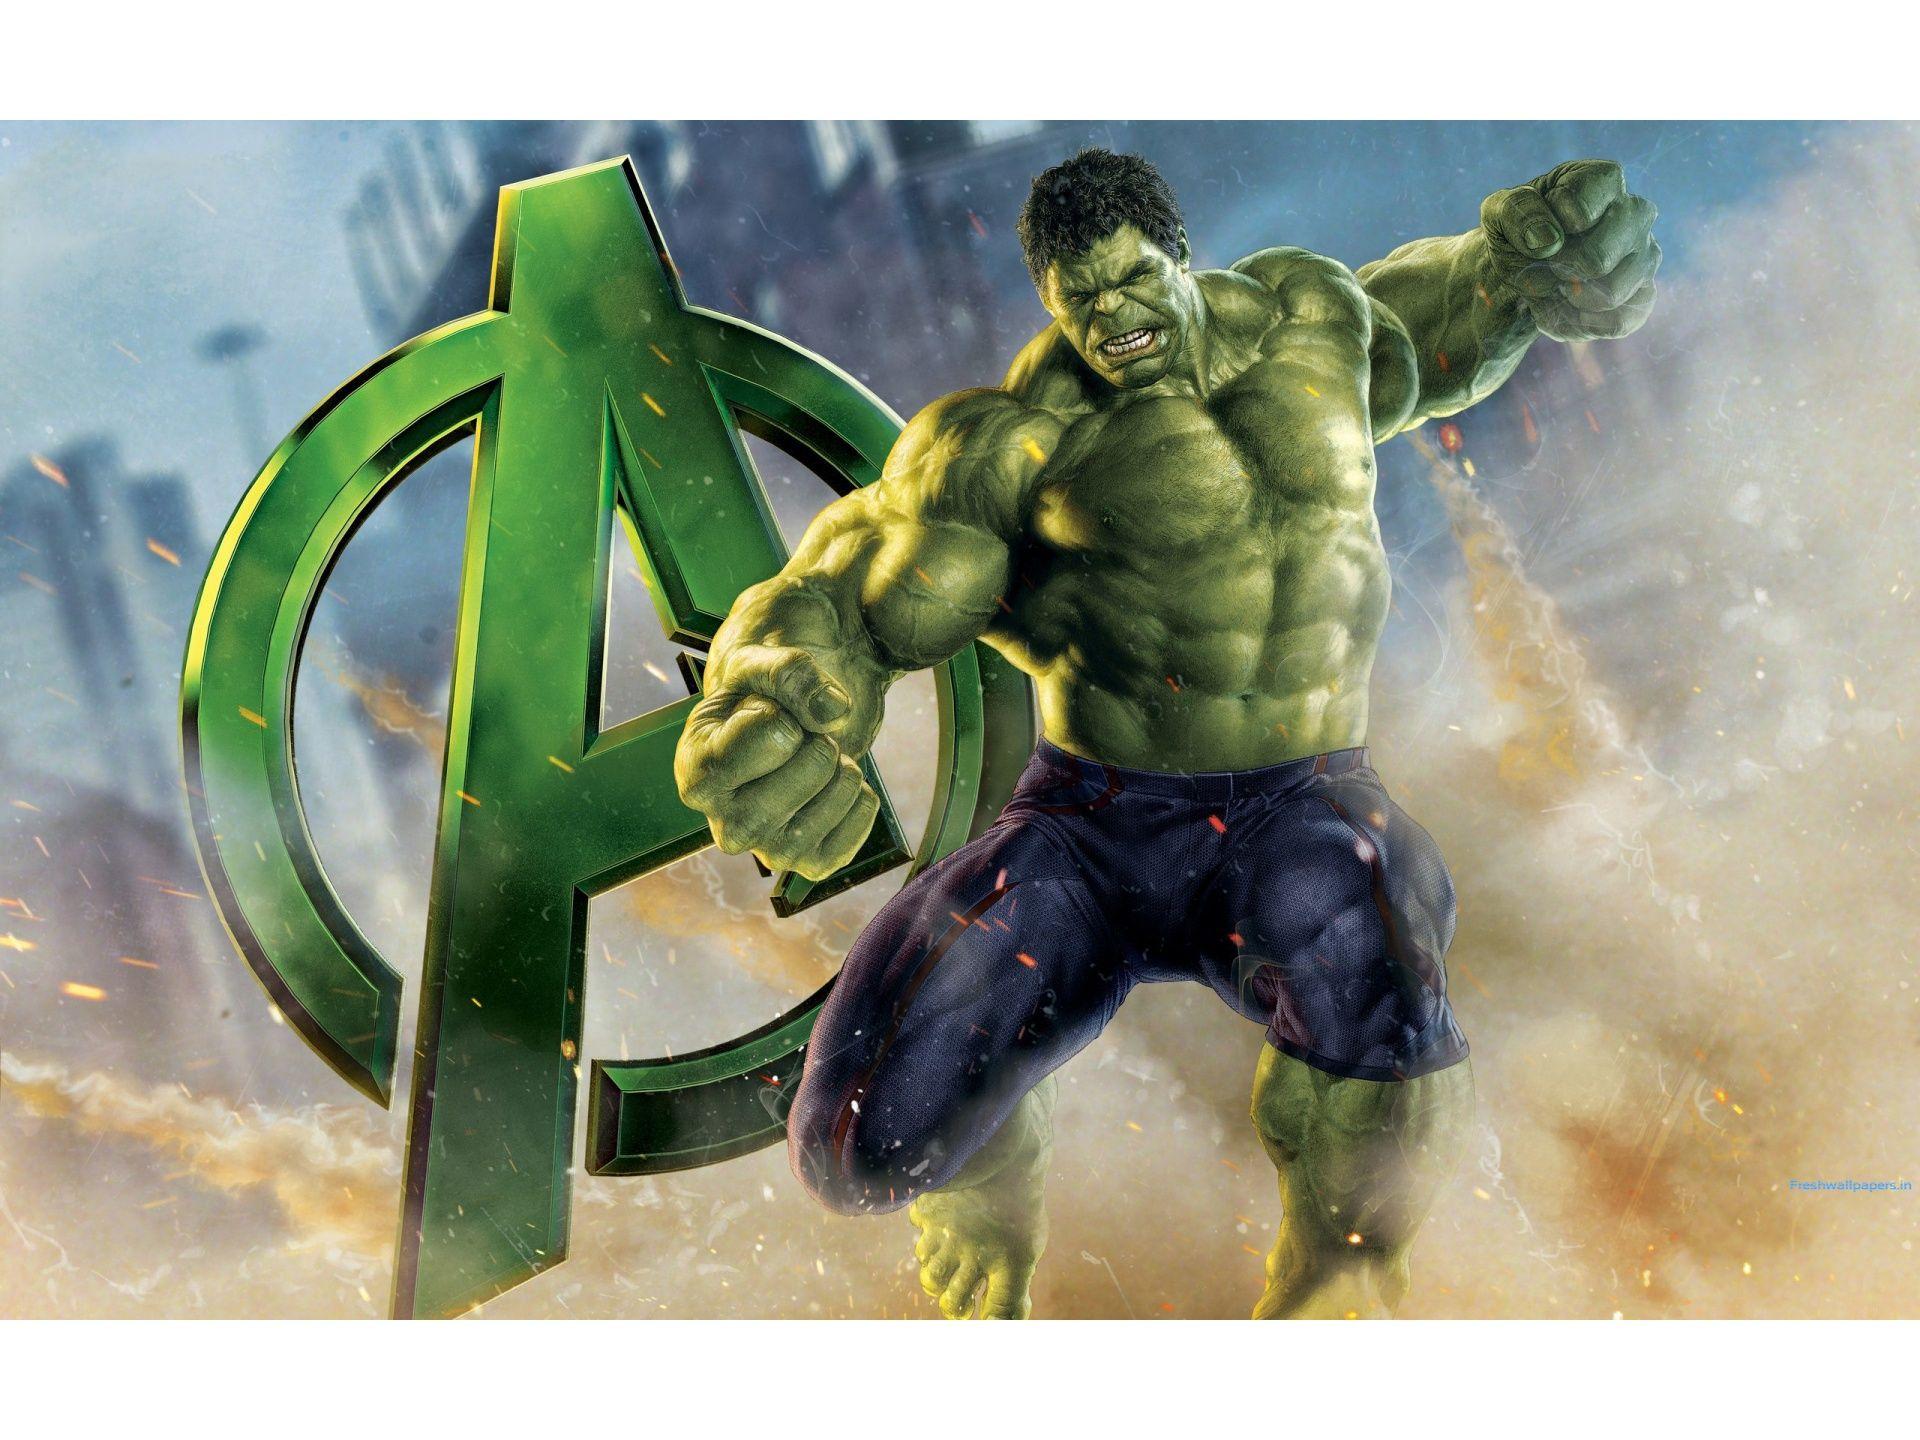 The Hulk Avengers Artwork wallpaper